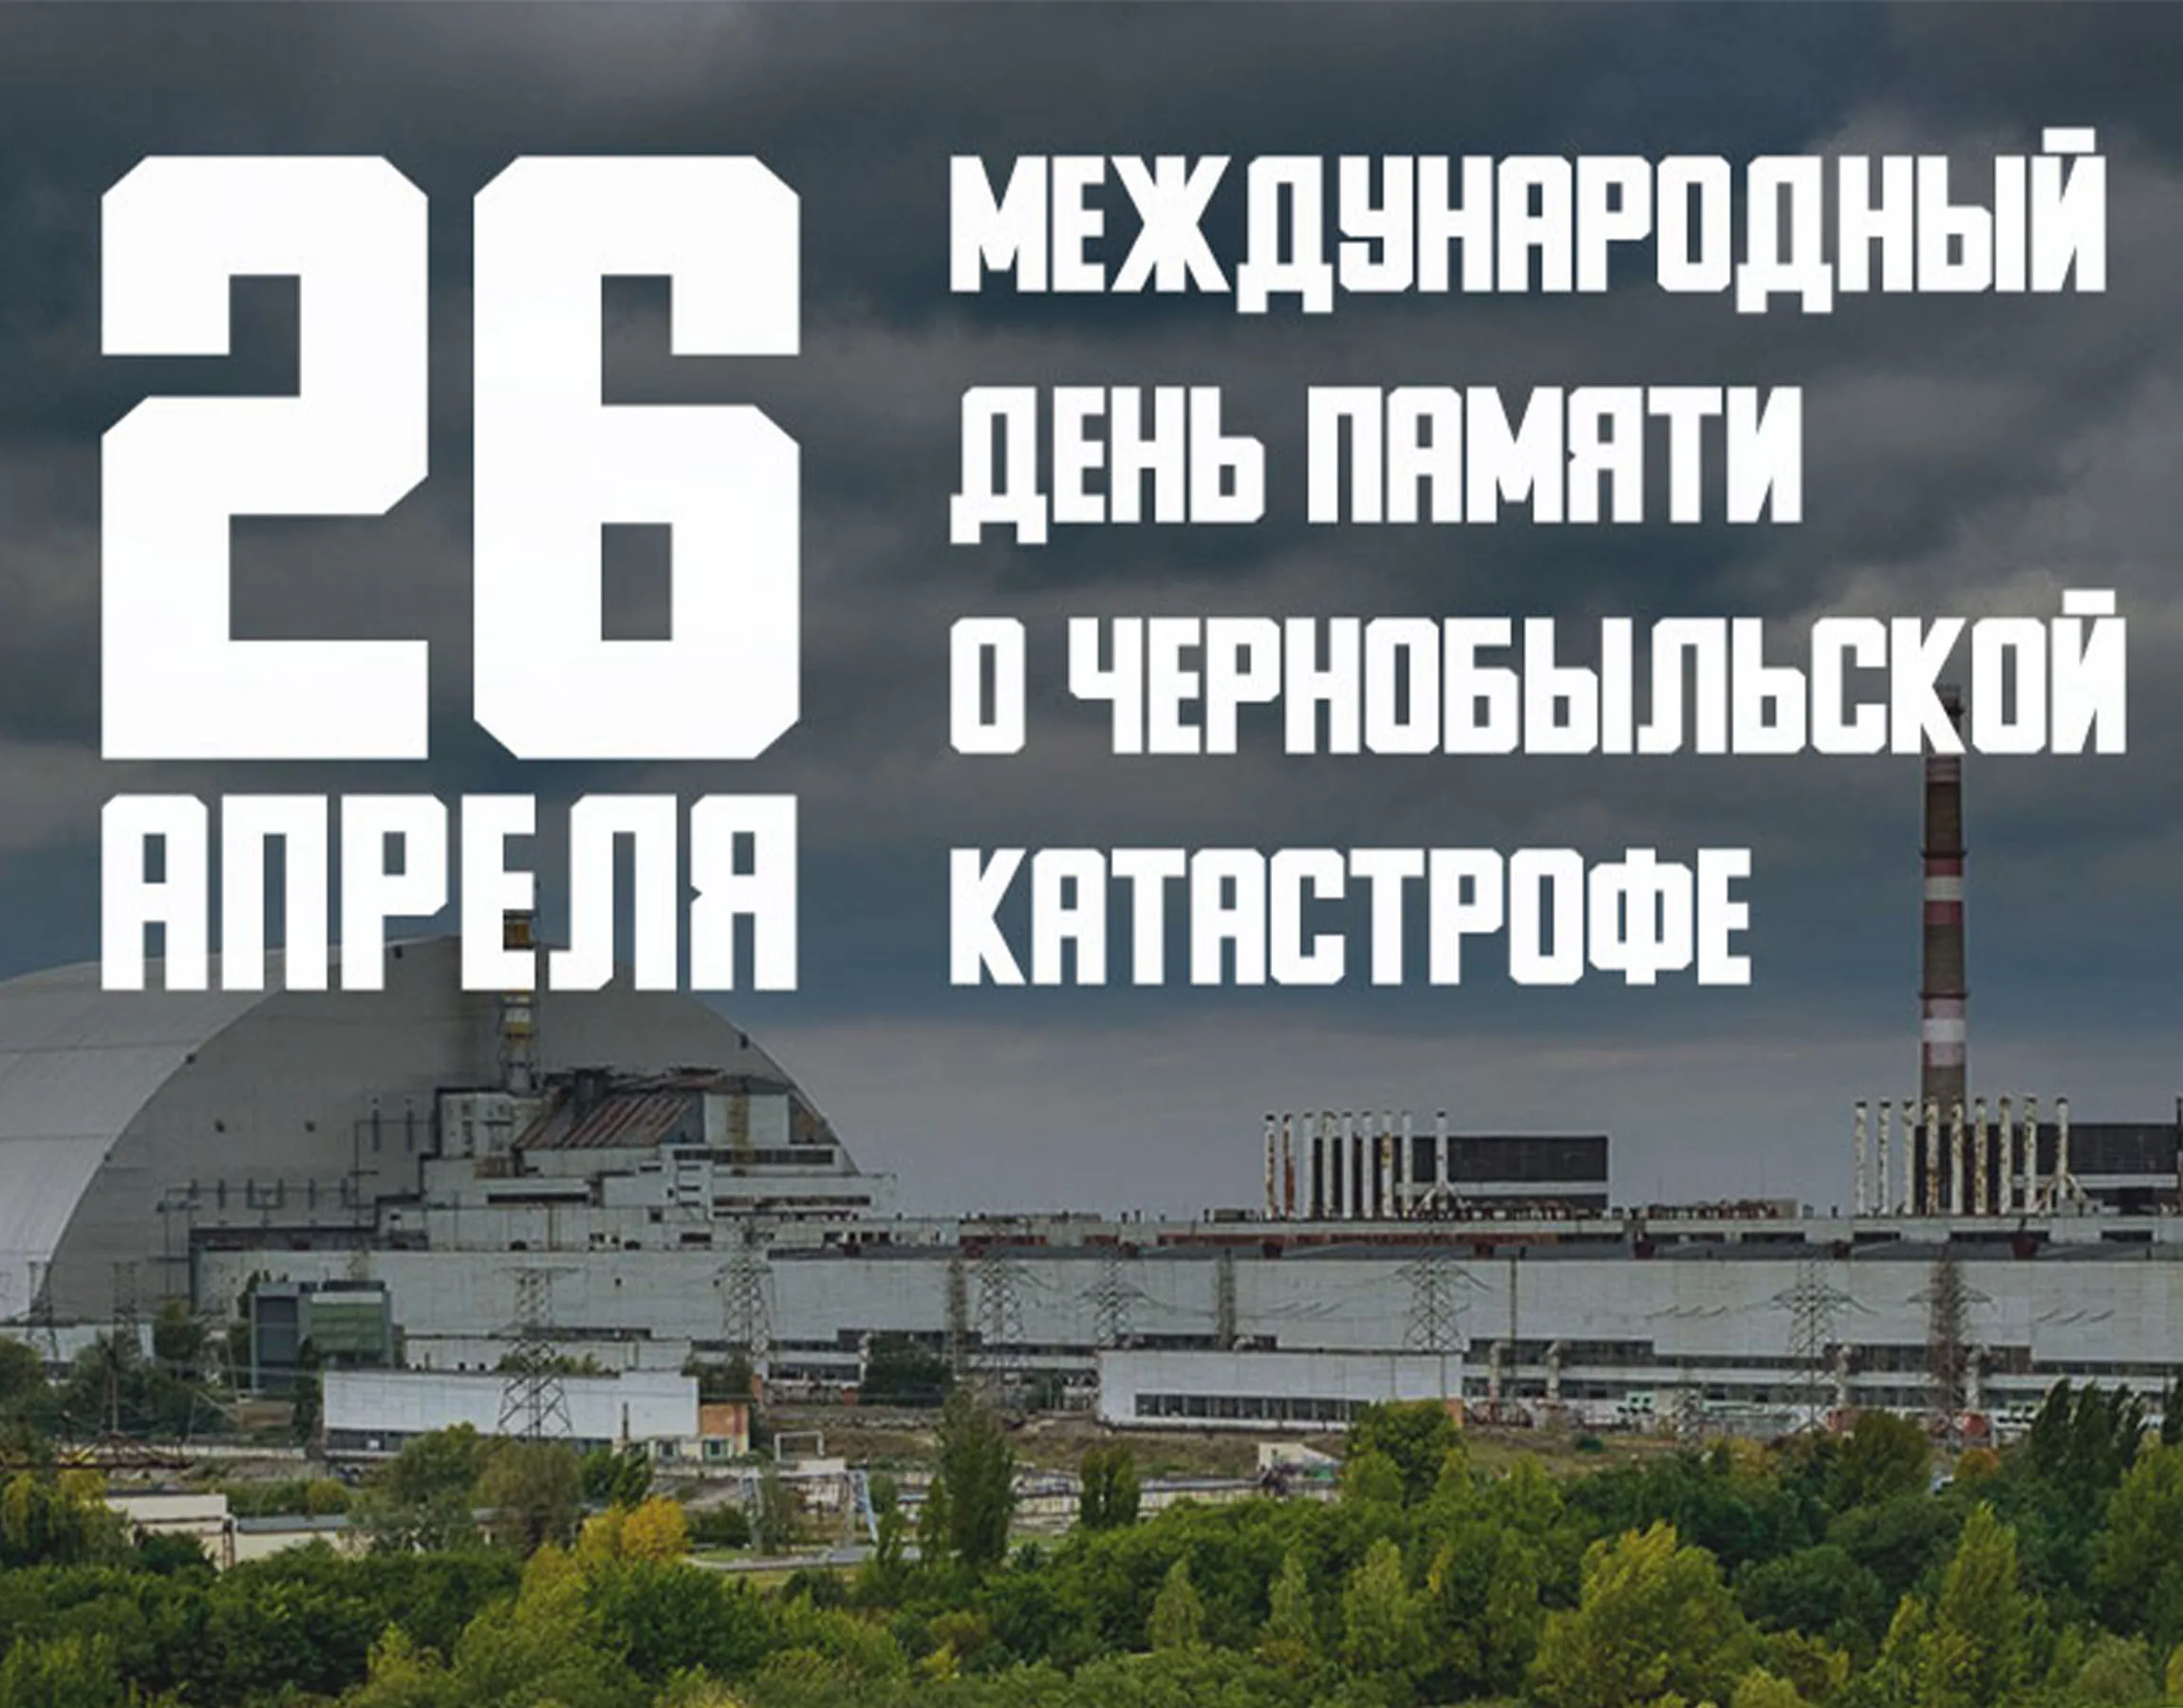 Чернобыльская аэс память